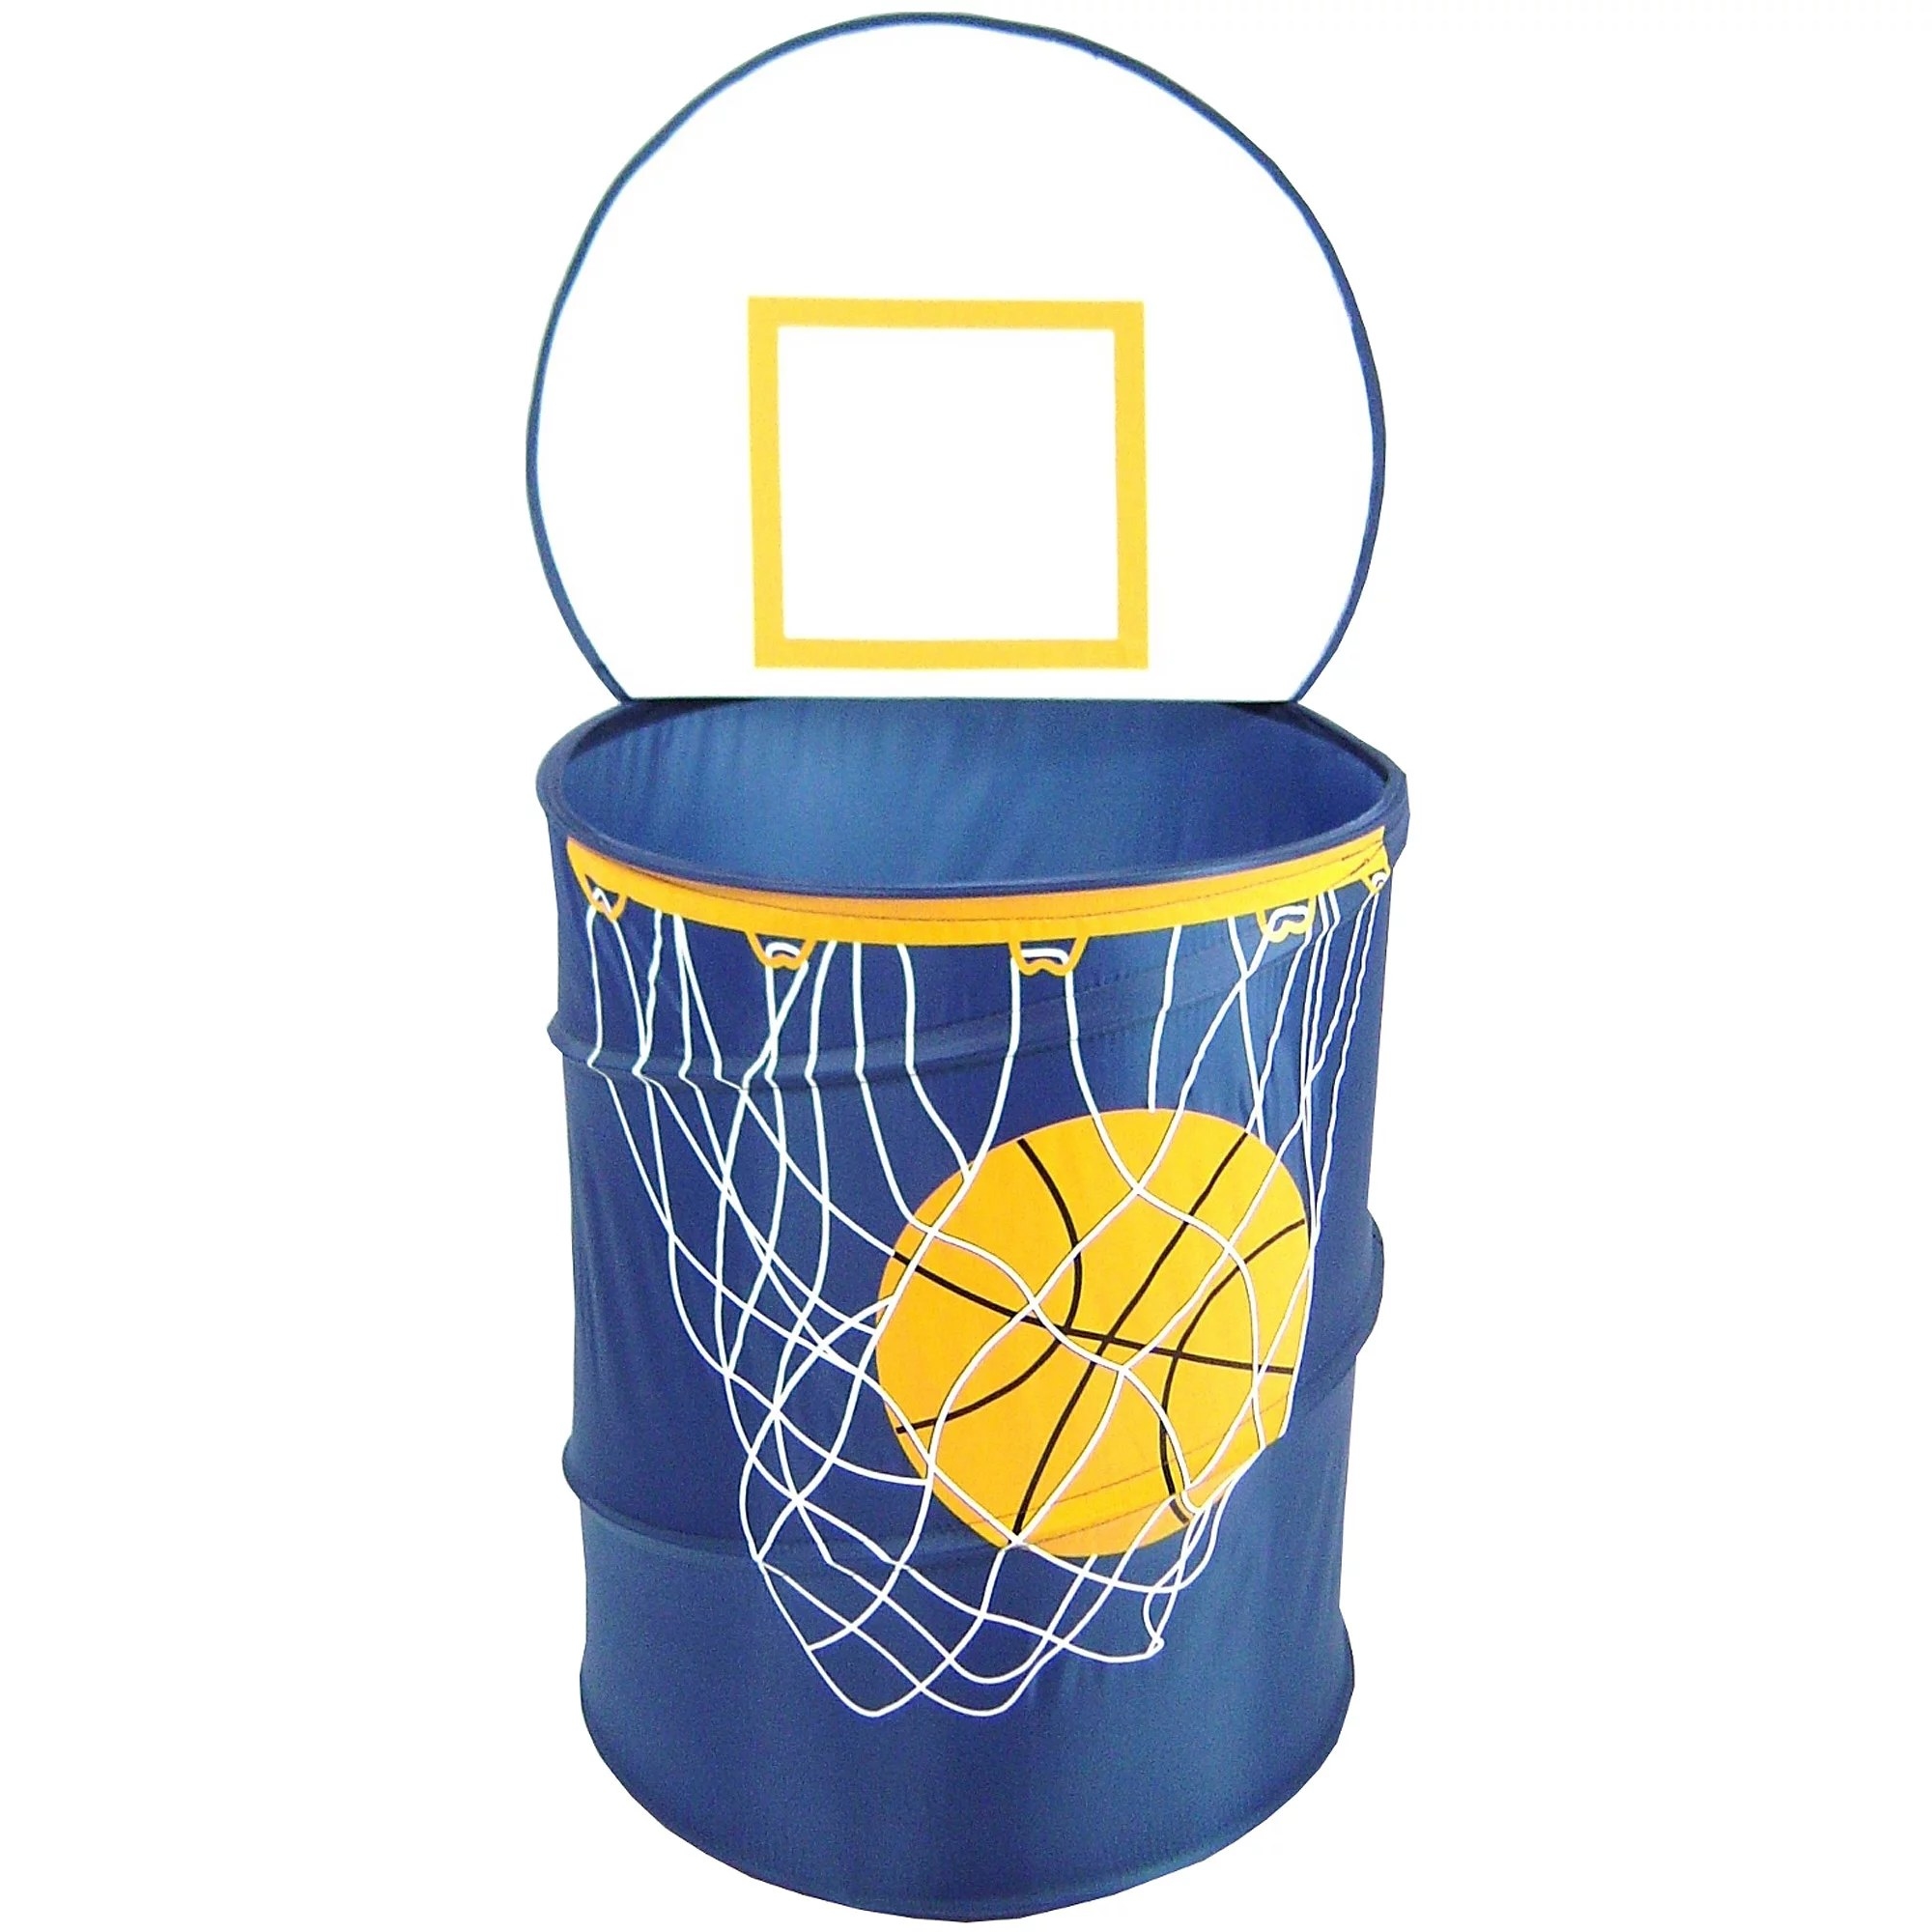 Basketball laundry basket